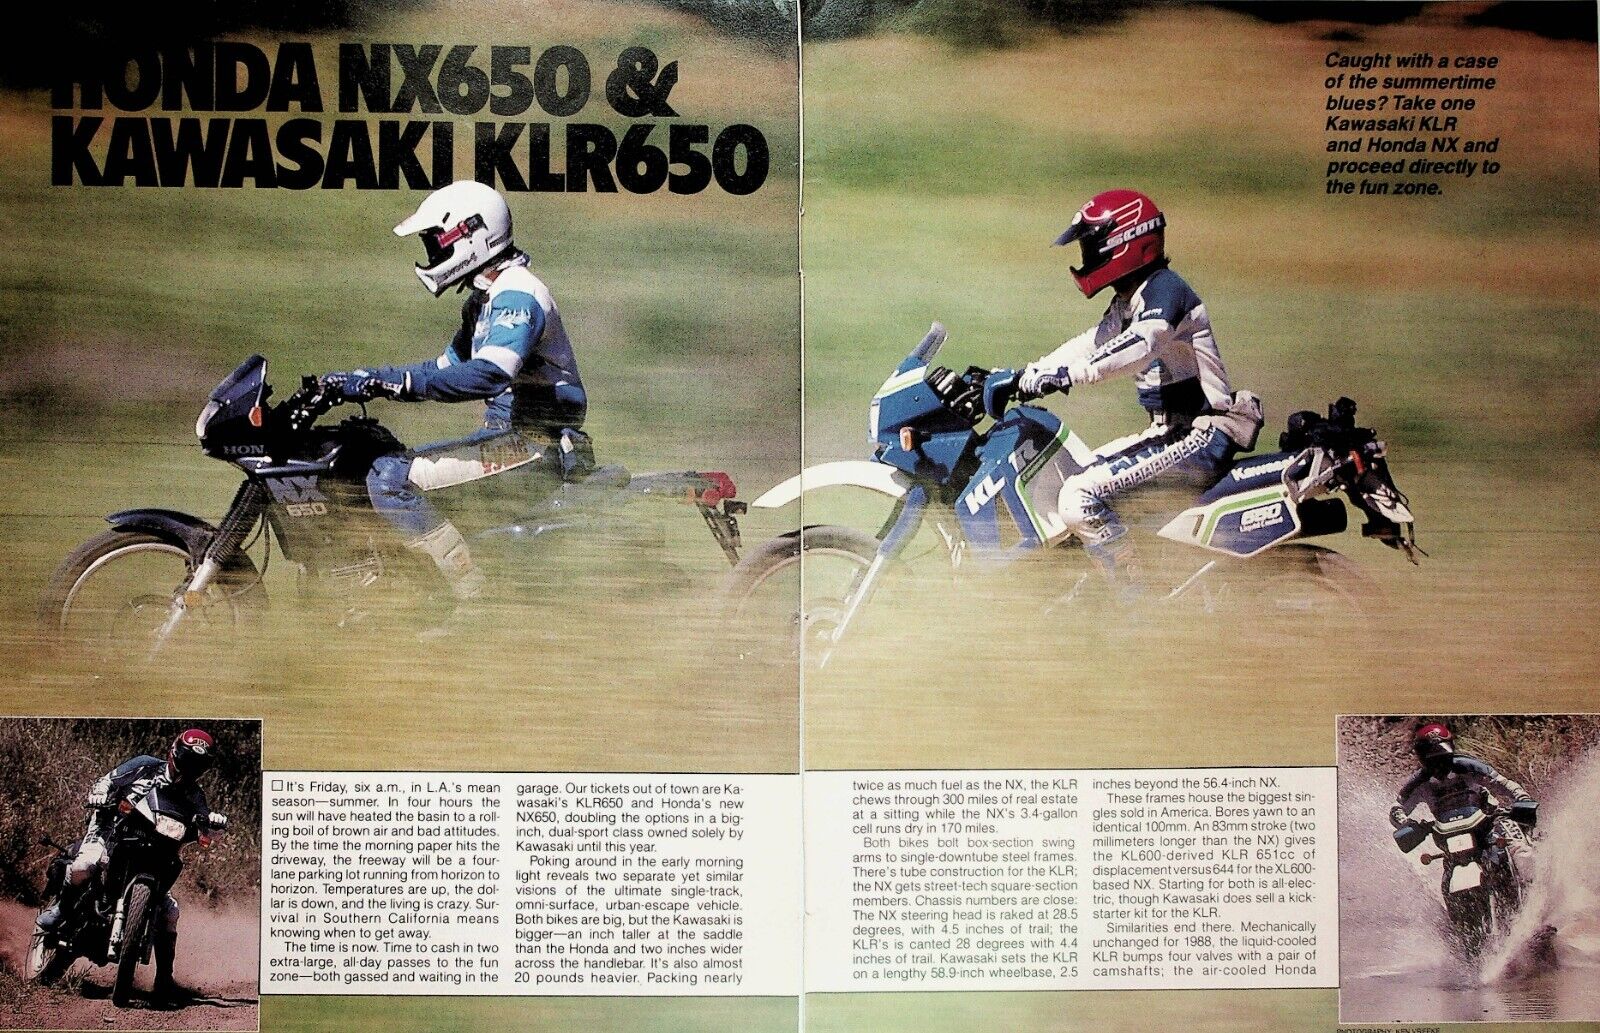 1988 Honda NX650 & Kawasaki KLR650 Road Test - 7-Page Vintage Motorcycle Article